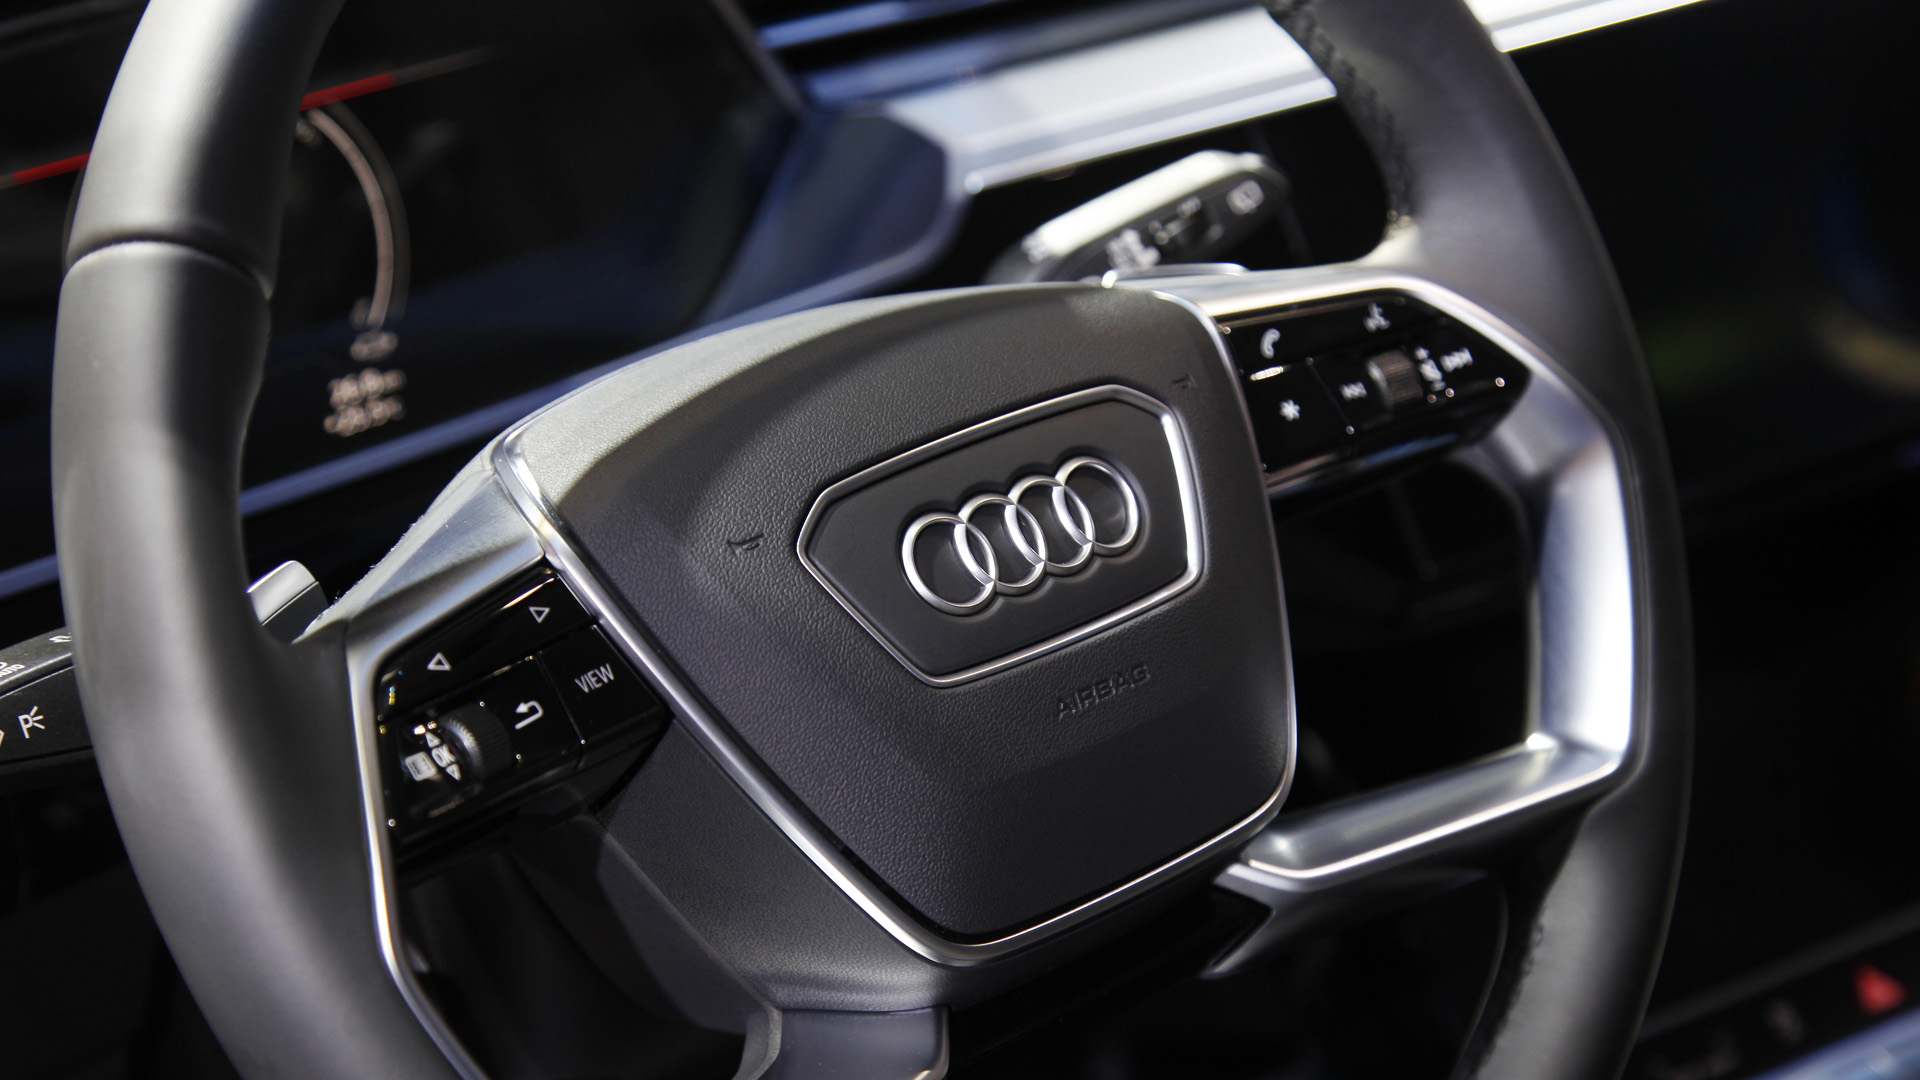 Triển lãm Ô tô Việt Nam 2022: Audi e-tron SUV có hai phiên bản, khởi điểm từ 2,97 tỷ đồng - Ảnh 8.